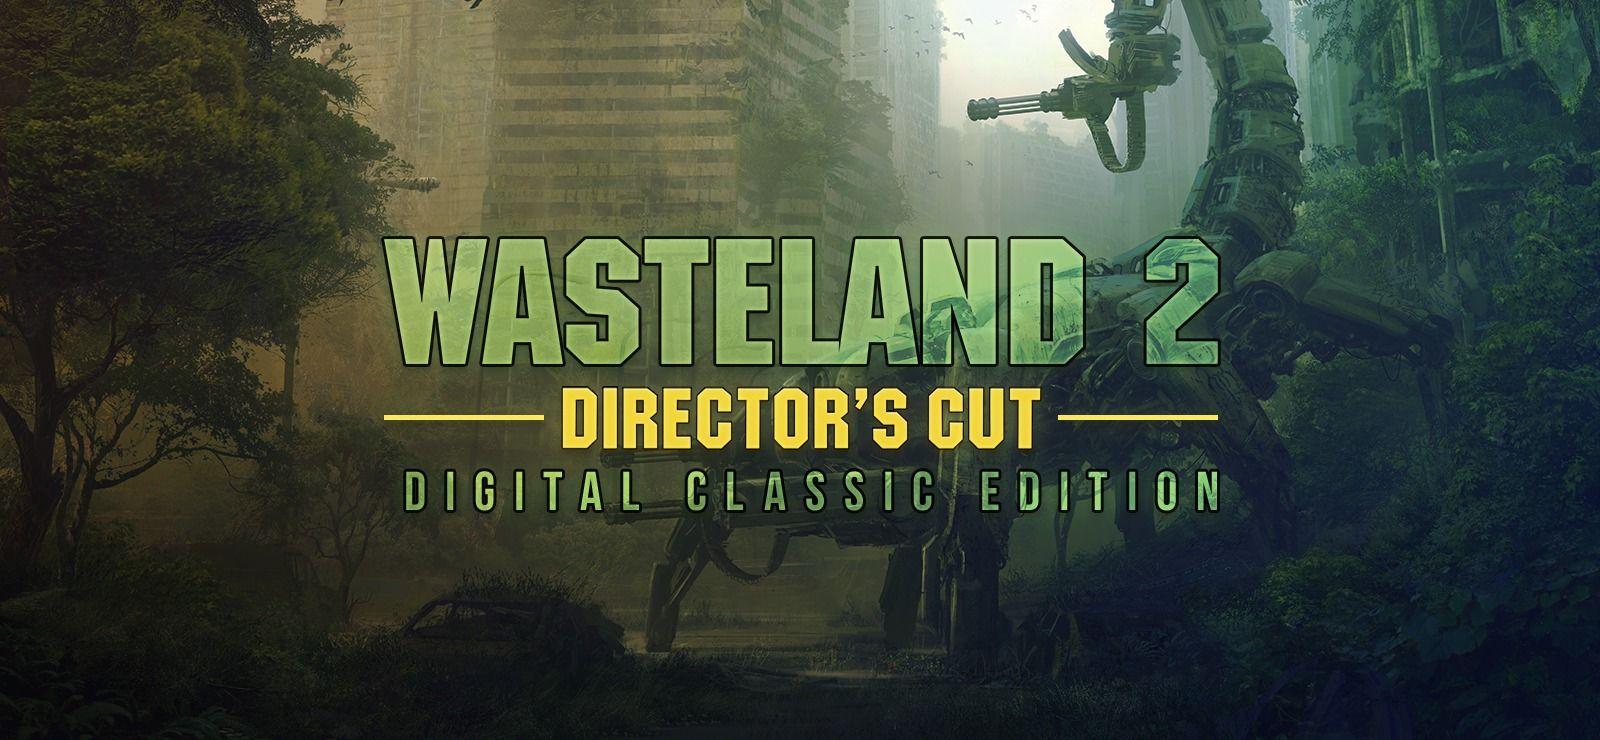 Wasteland 2 Director's Cut Digital Classic Edition on GOG.com